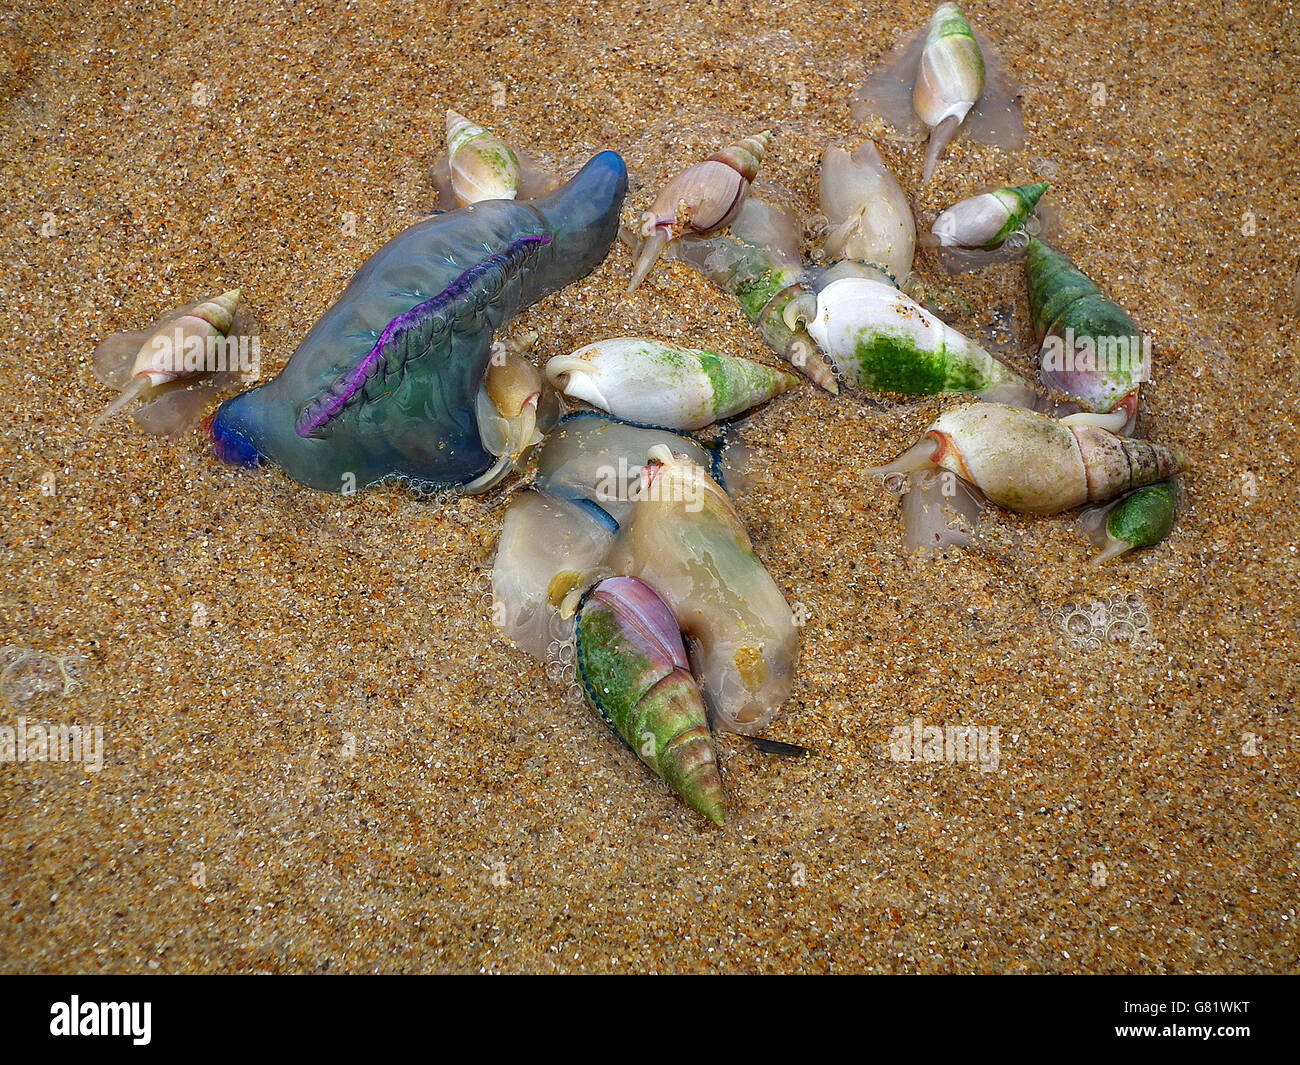 Coquillages colorés et portugais-de-guerre sur les méduses, plage (Physalia physalis), Eastern Cape, Afrique du Sud, le 14 décembre 2011 Banque D'Images